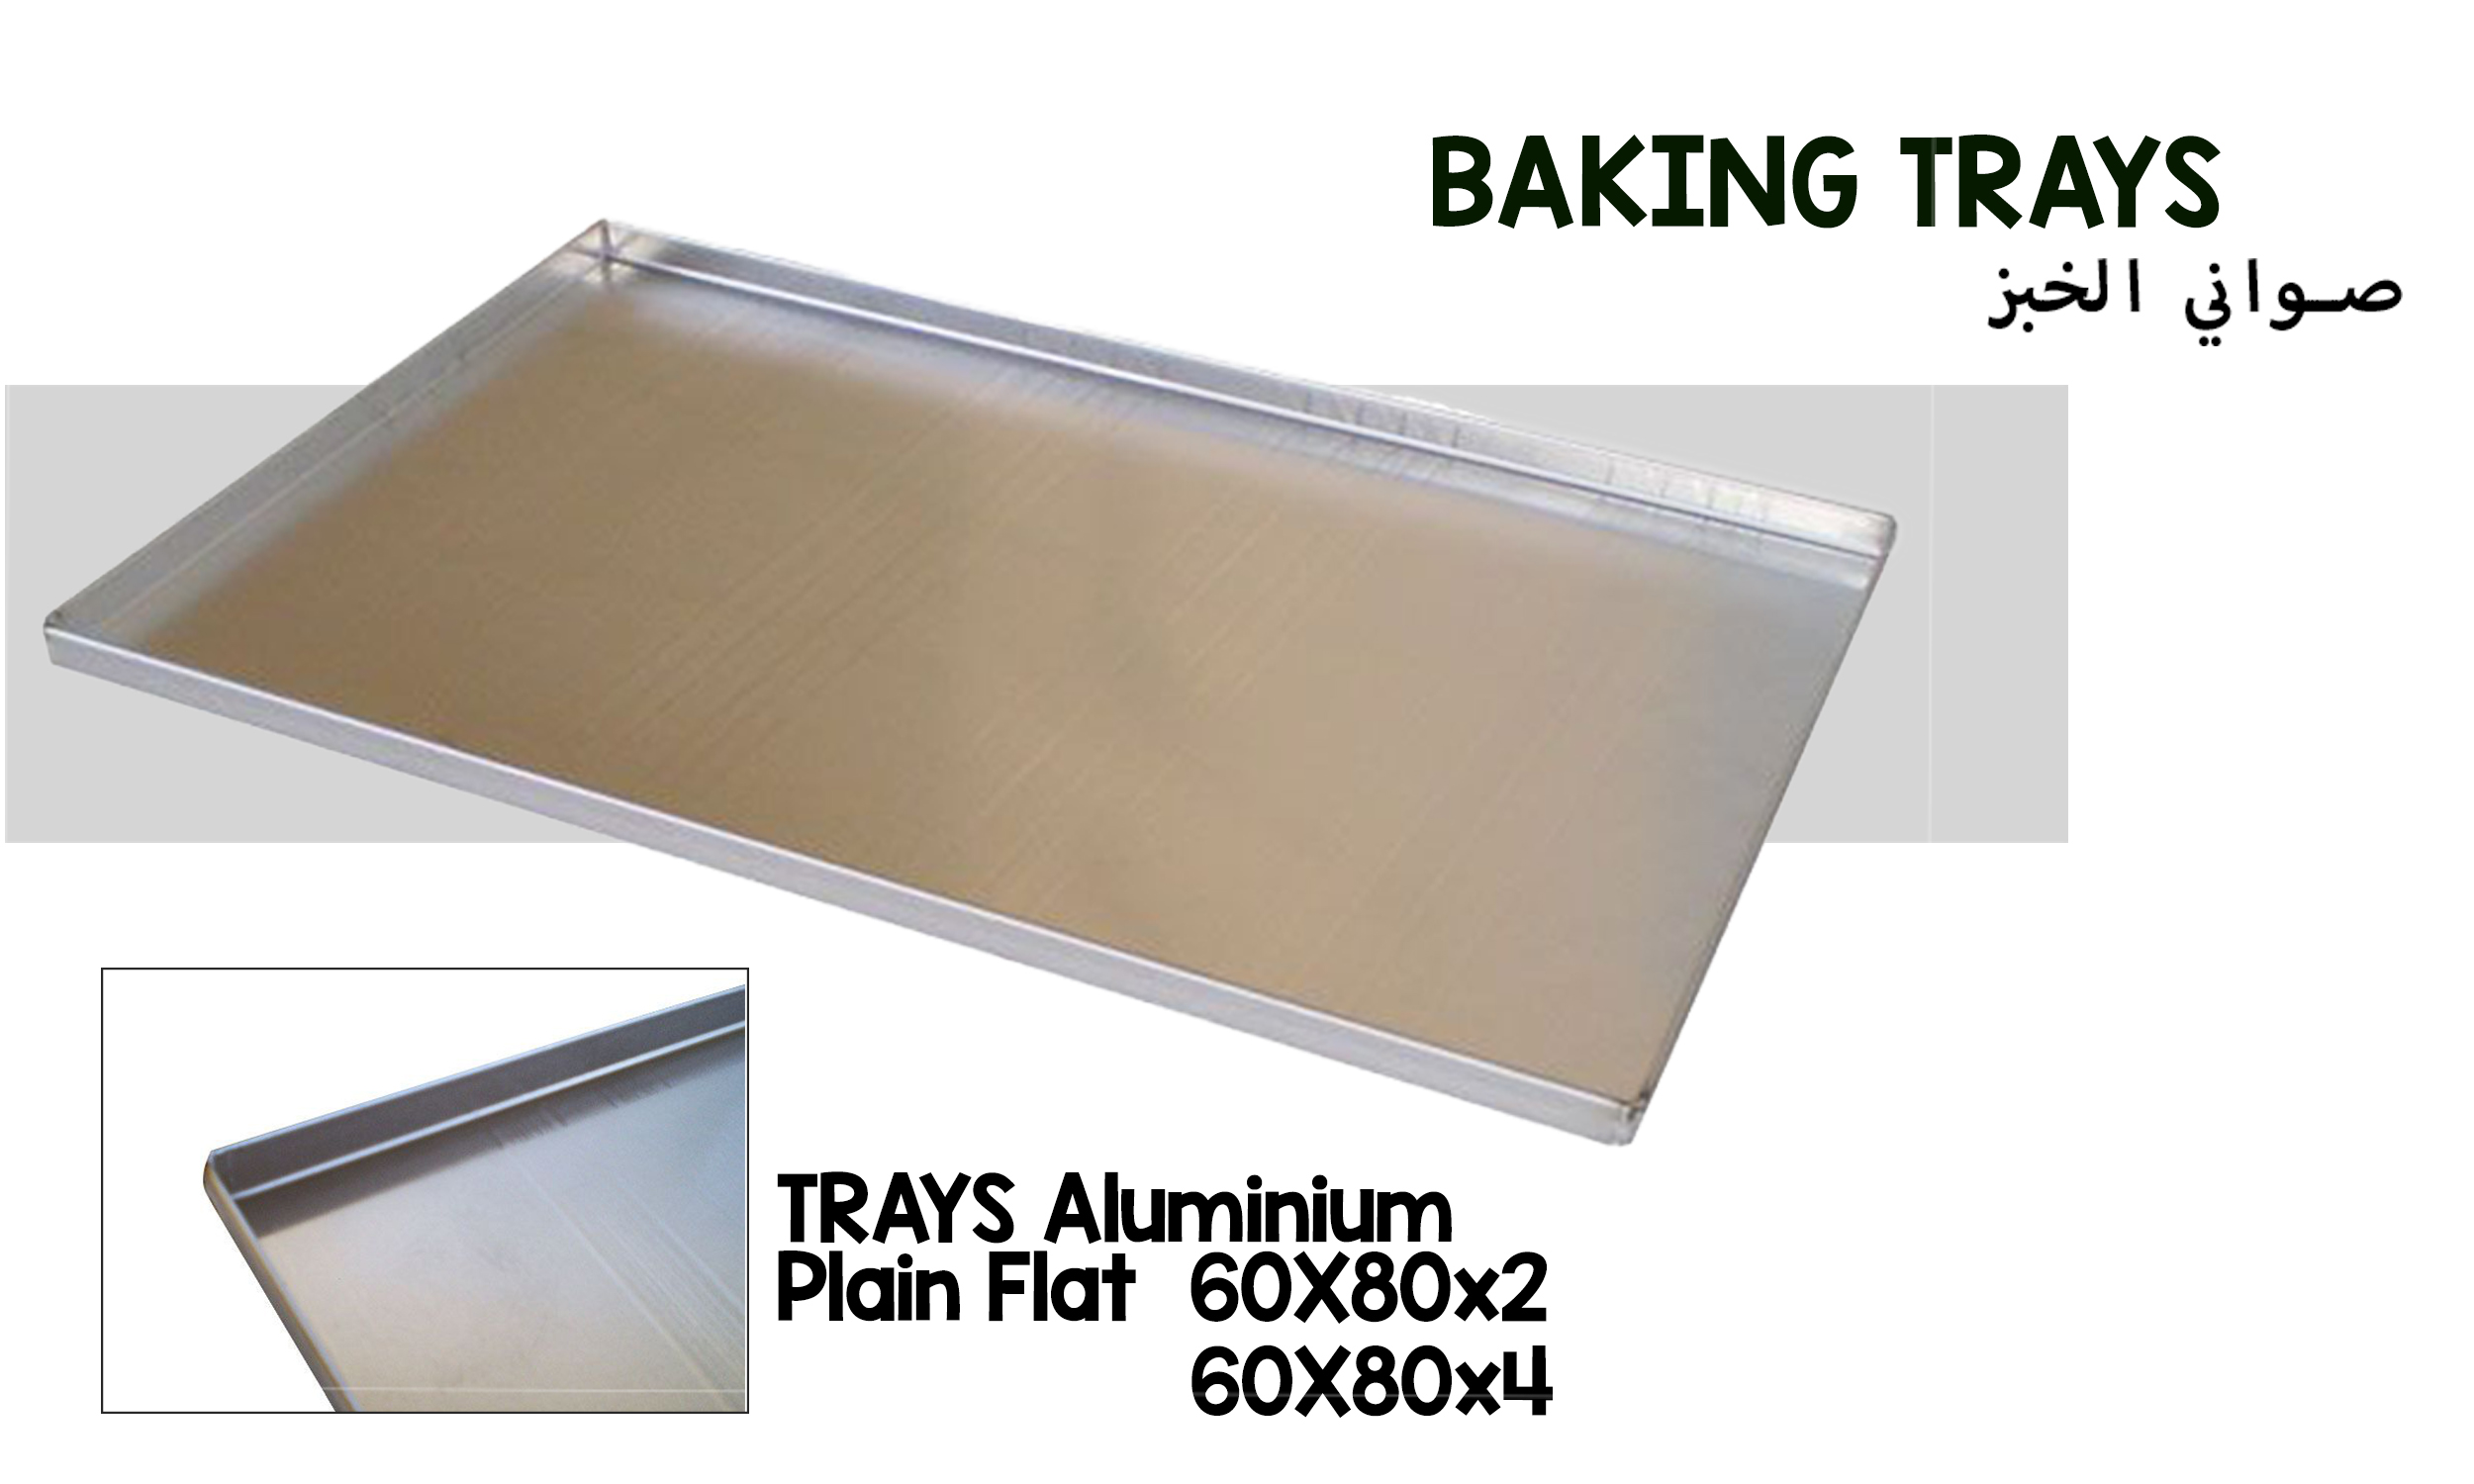 Baking trays